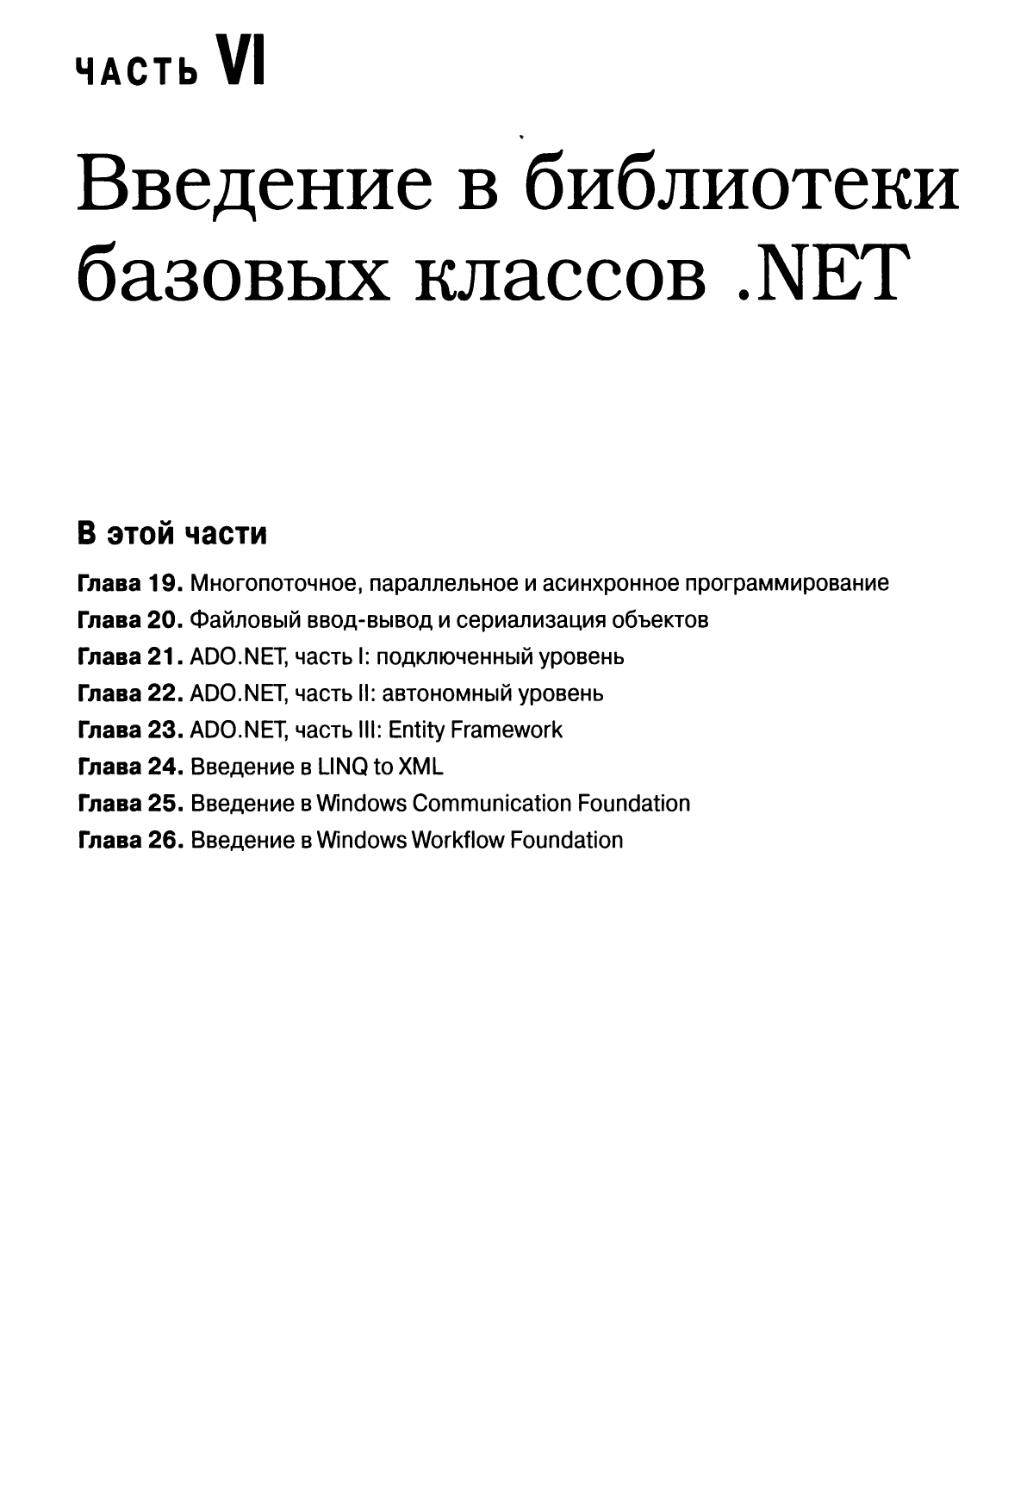 Часть VI. Введение в библиотеки базовых классов .NET